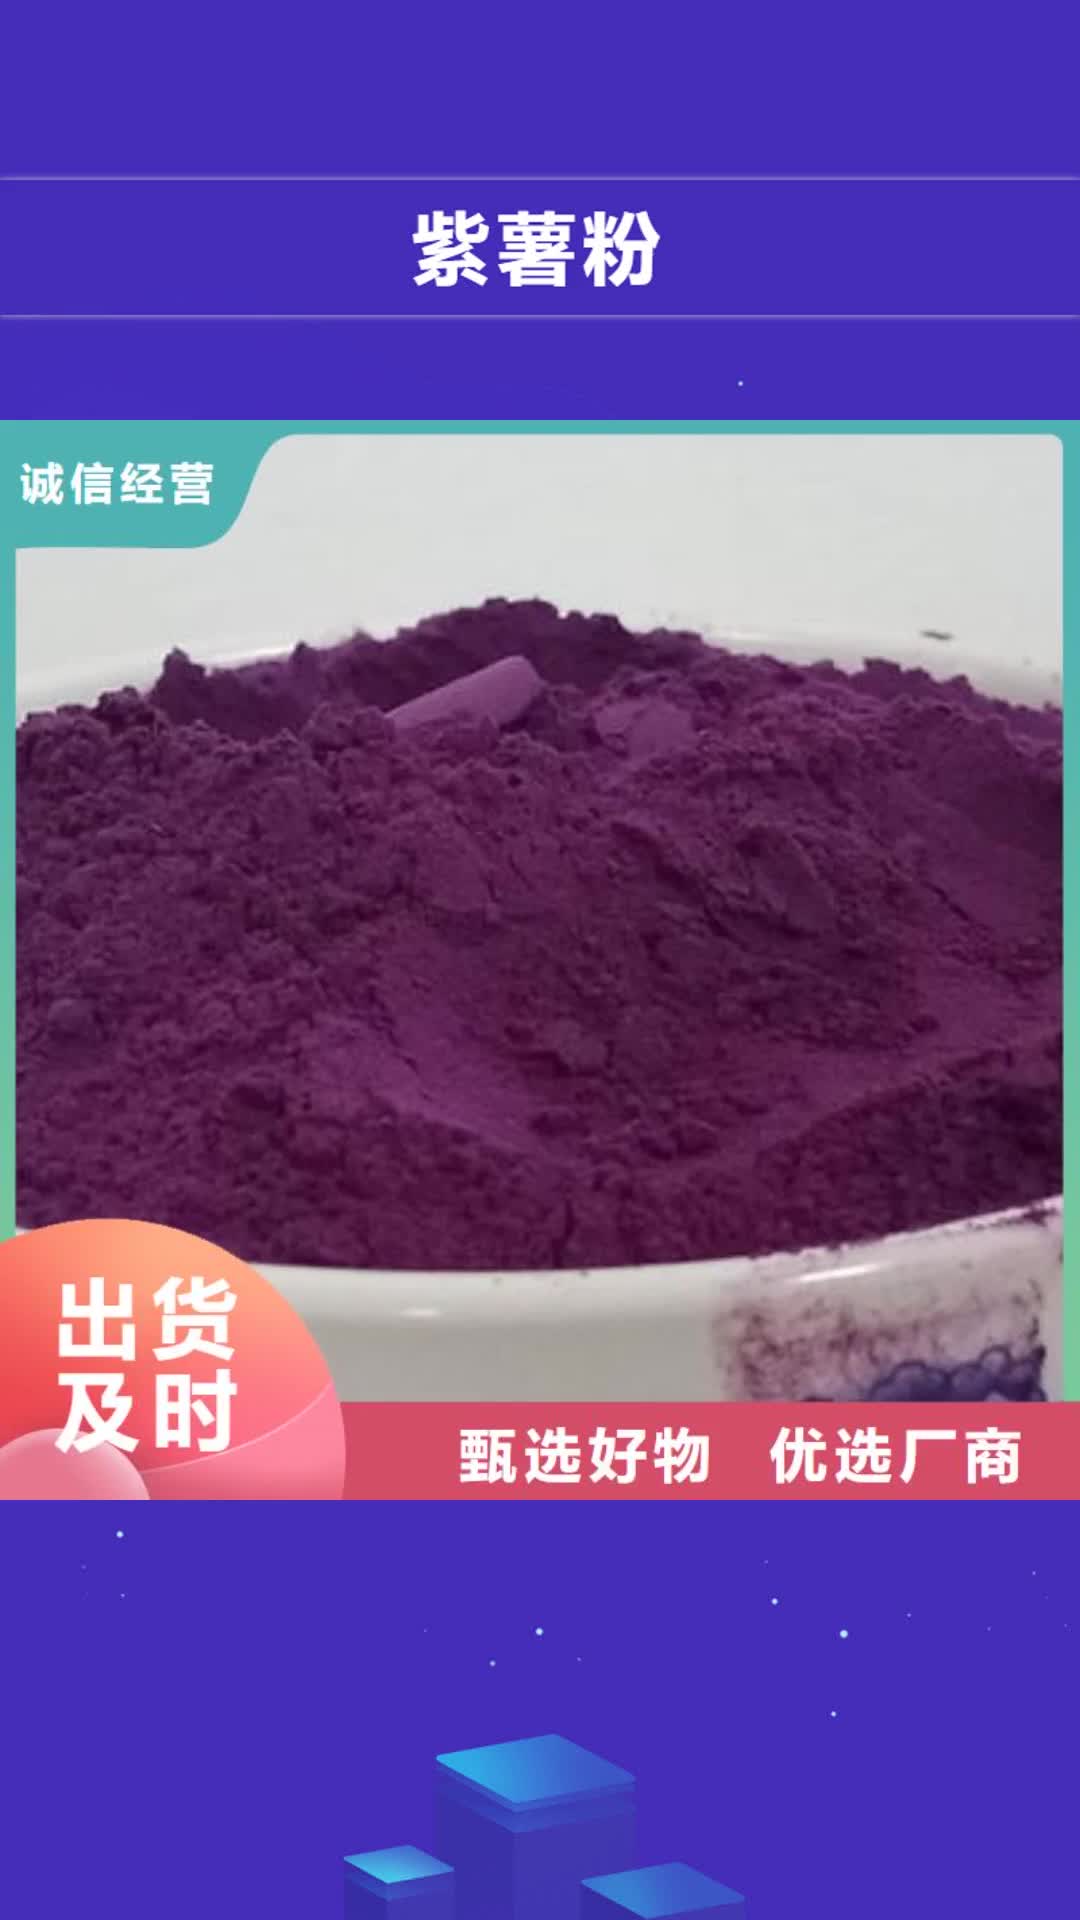 淄博 紫薯粉【胡萝卜粉】制造生产销售